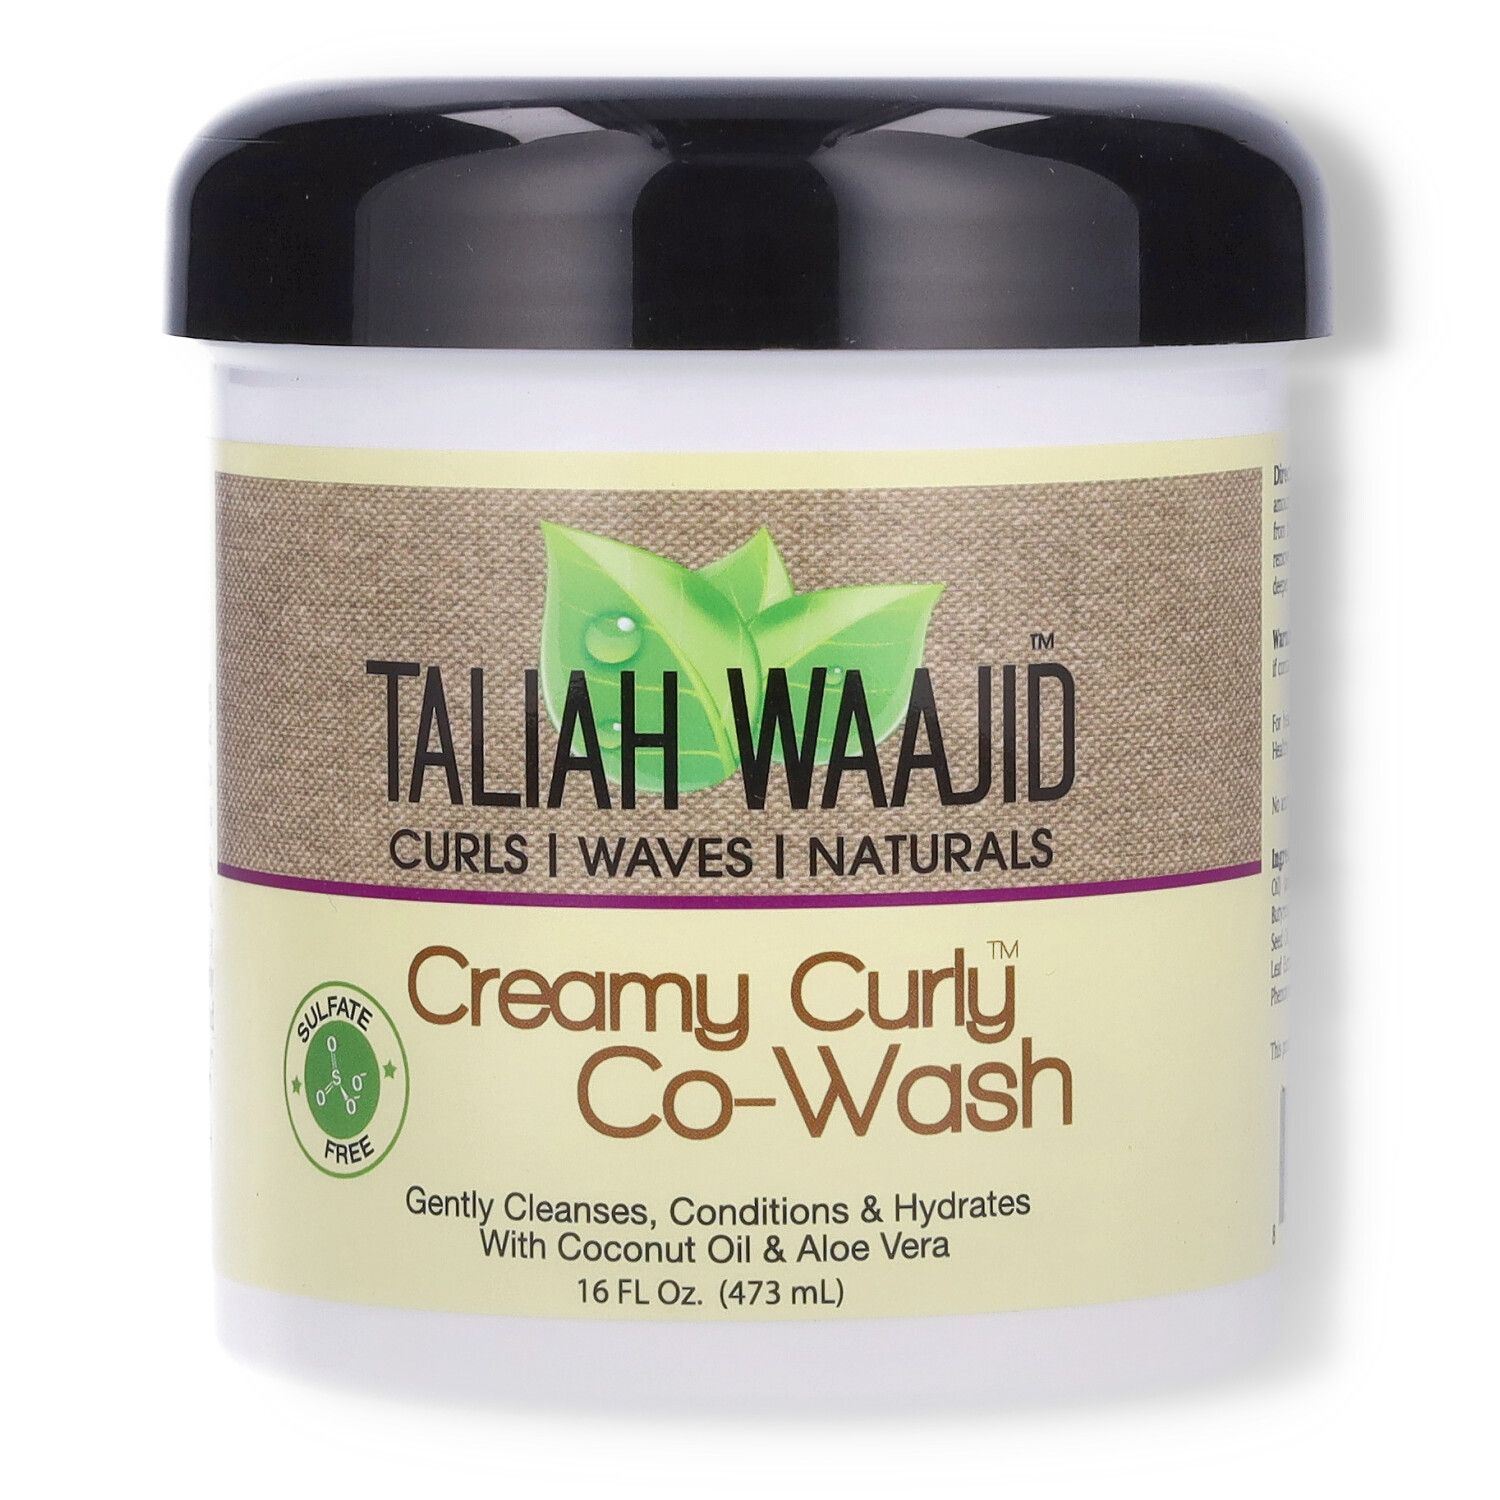 Taliah Waajid Creamy Curly Co-wash - 16oz